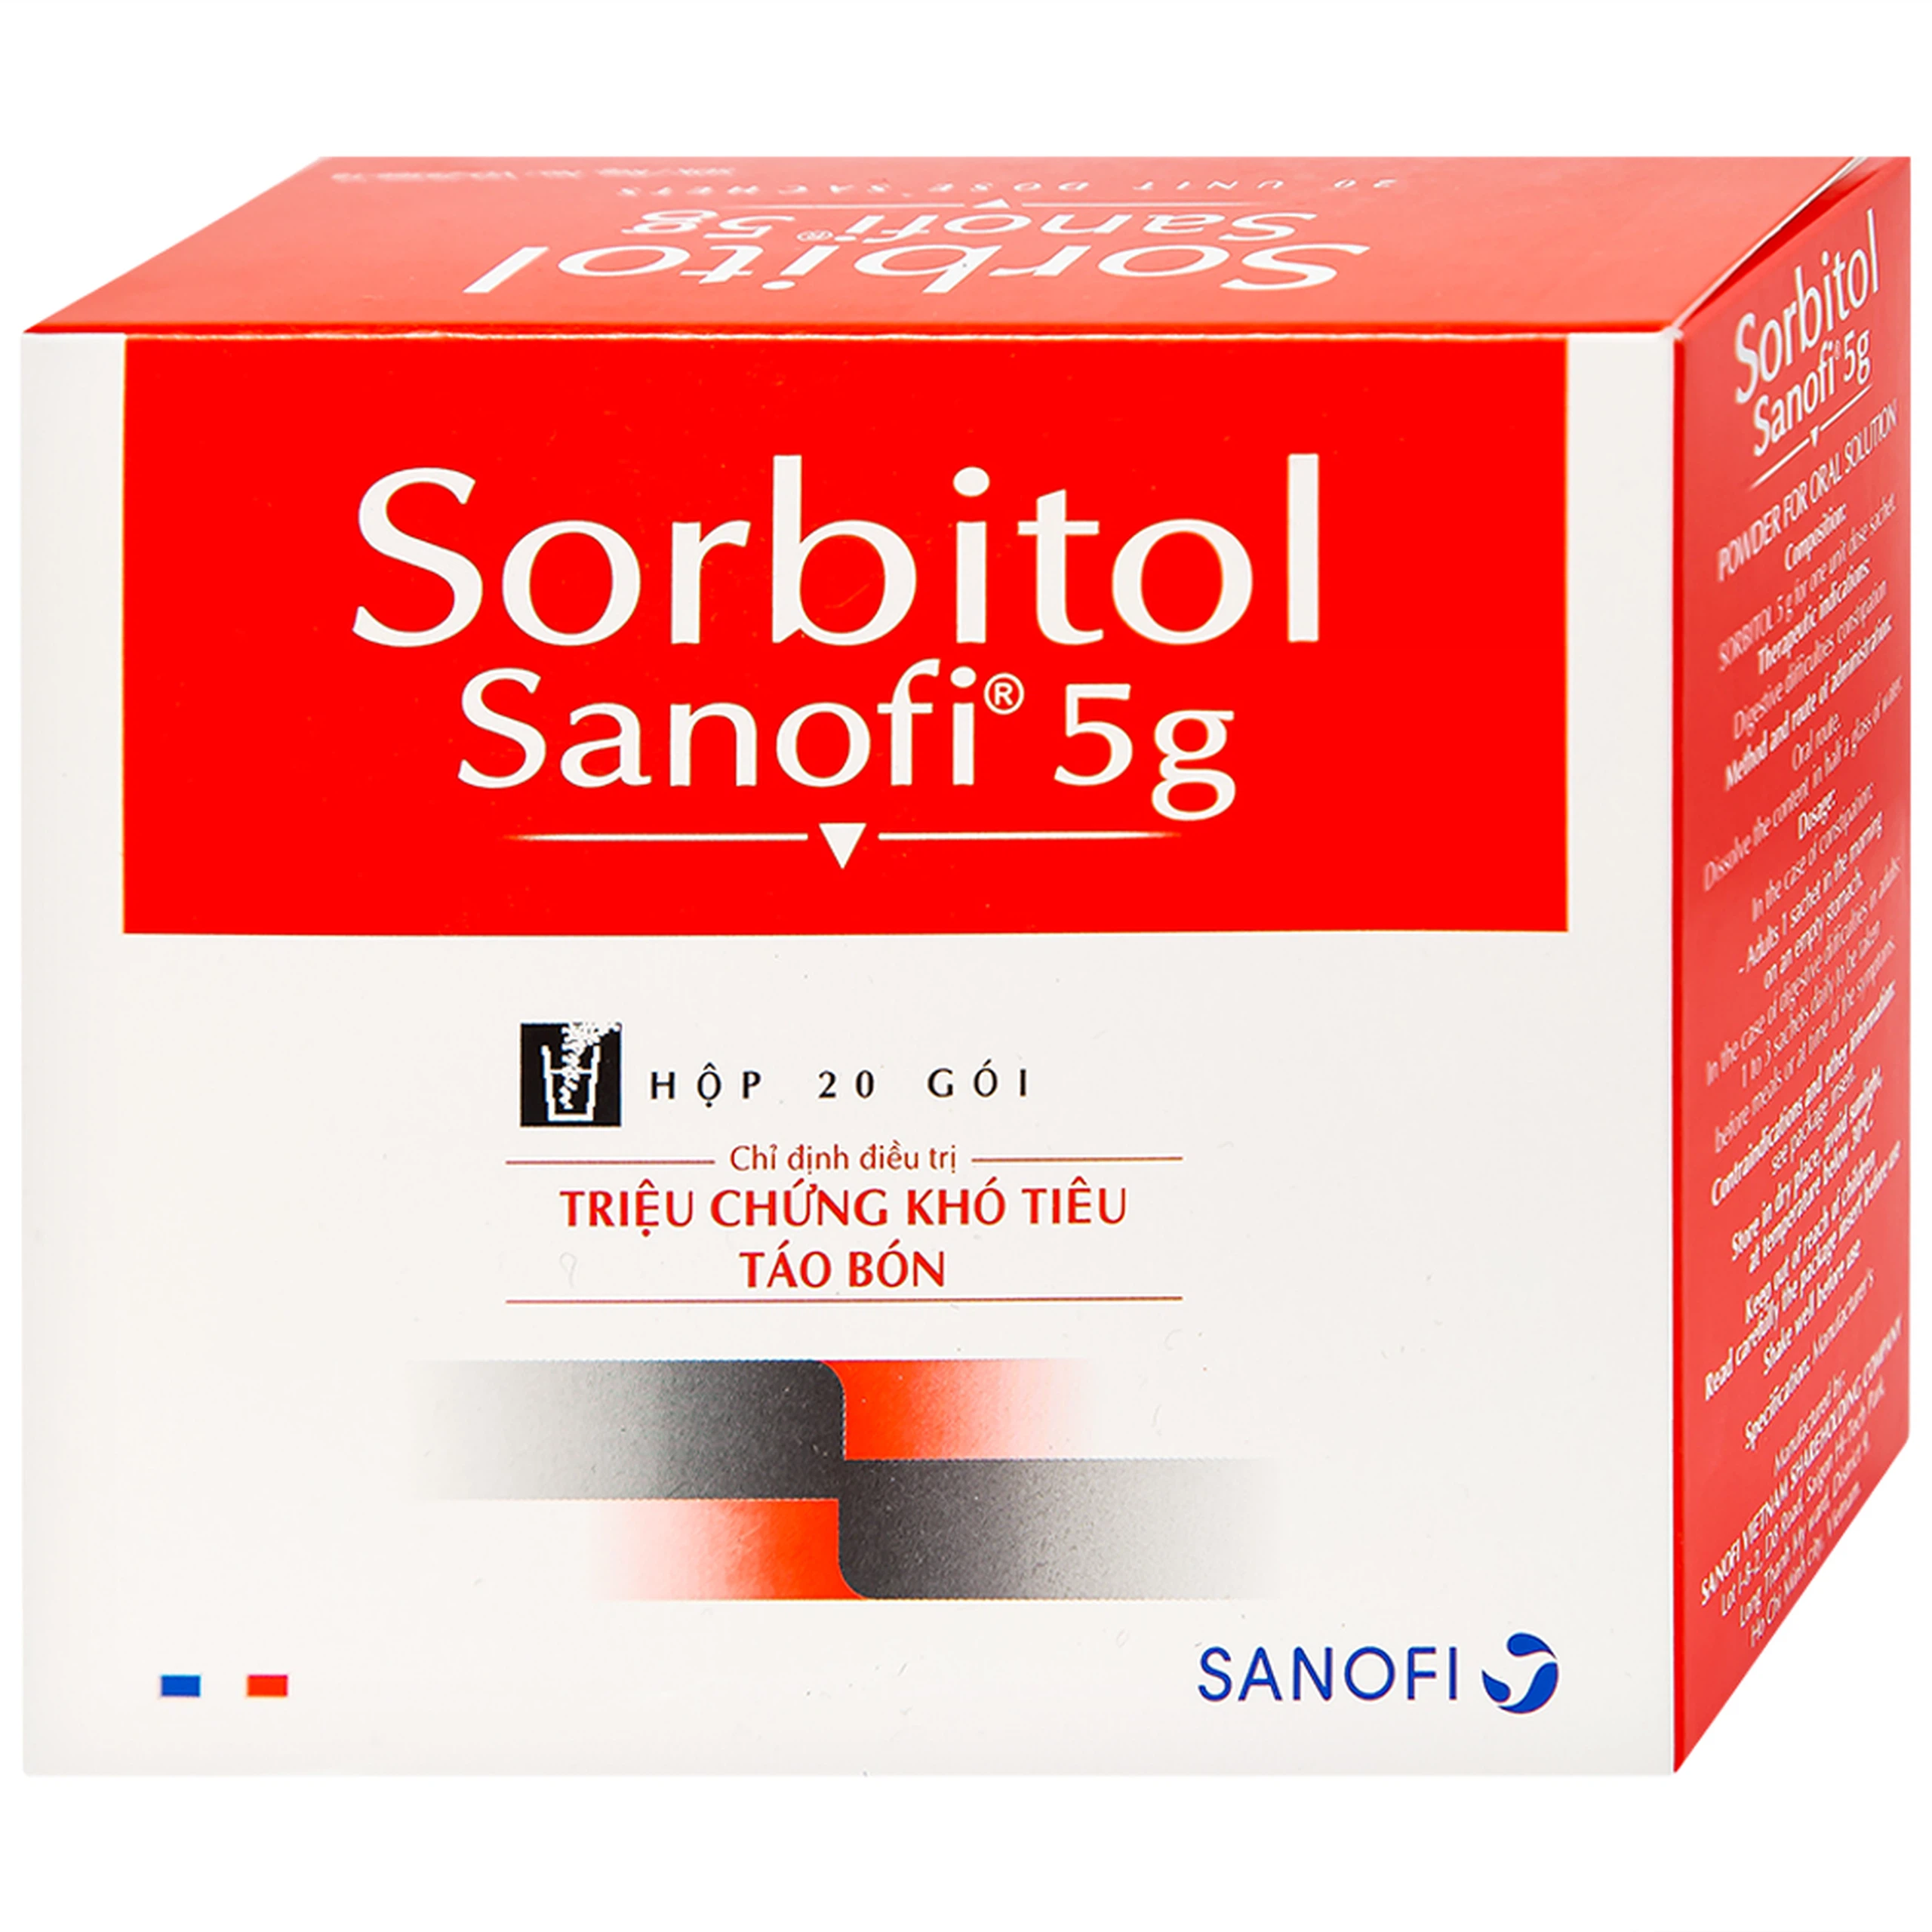 Thuốc bột Sorbitol Sanofi 5g điều trị triệu chứng táo bón, khó tiêu (20 gói x 5g)